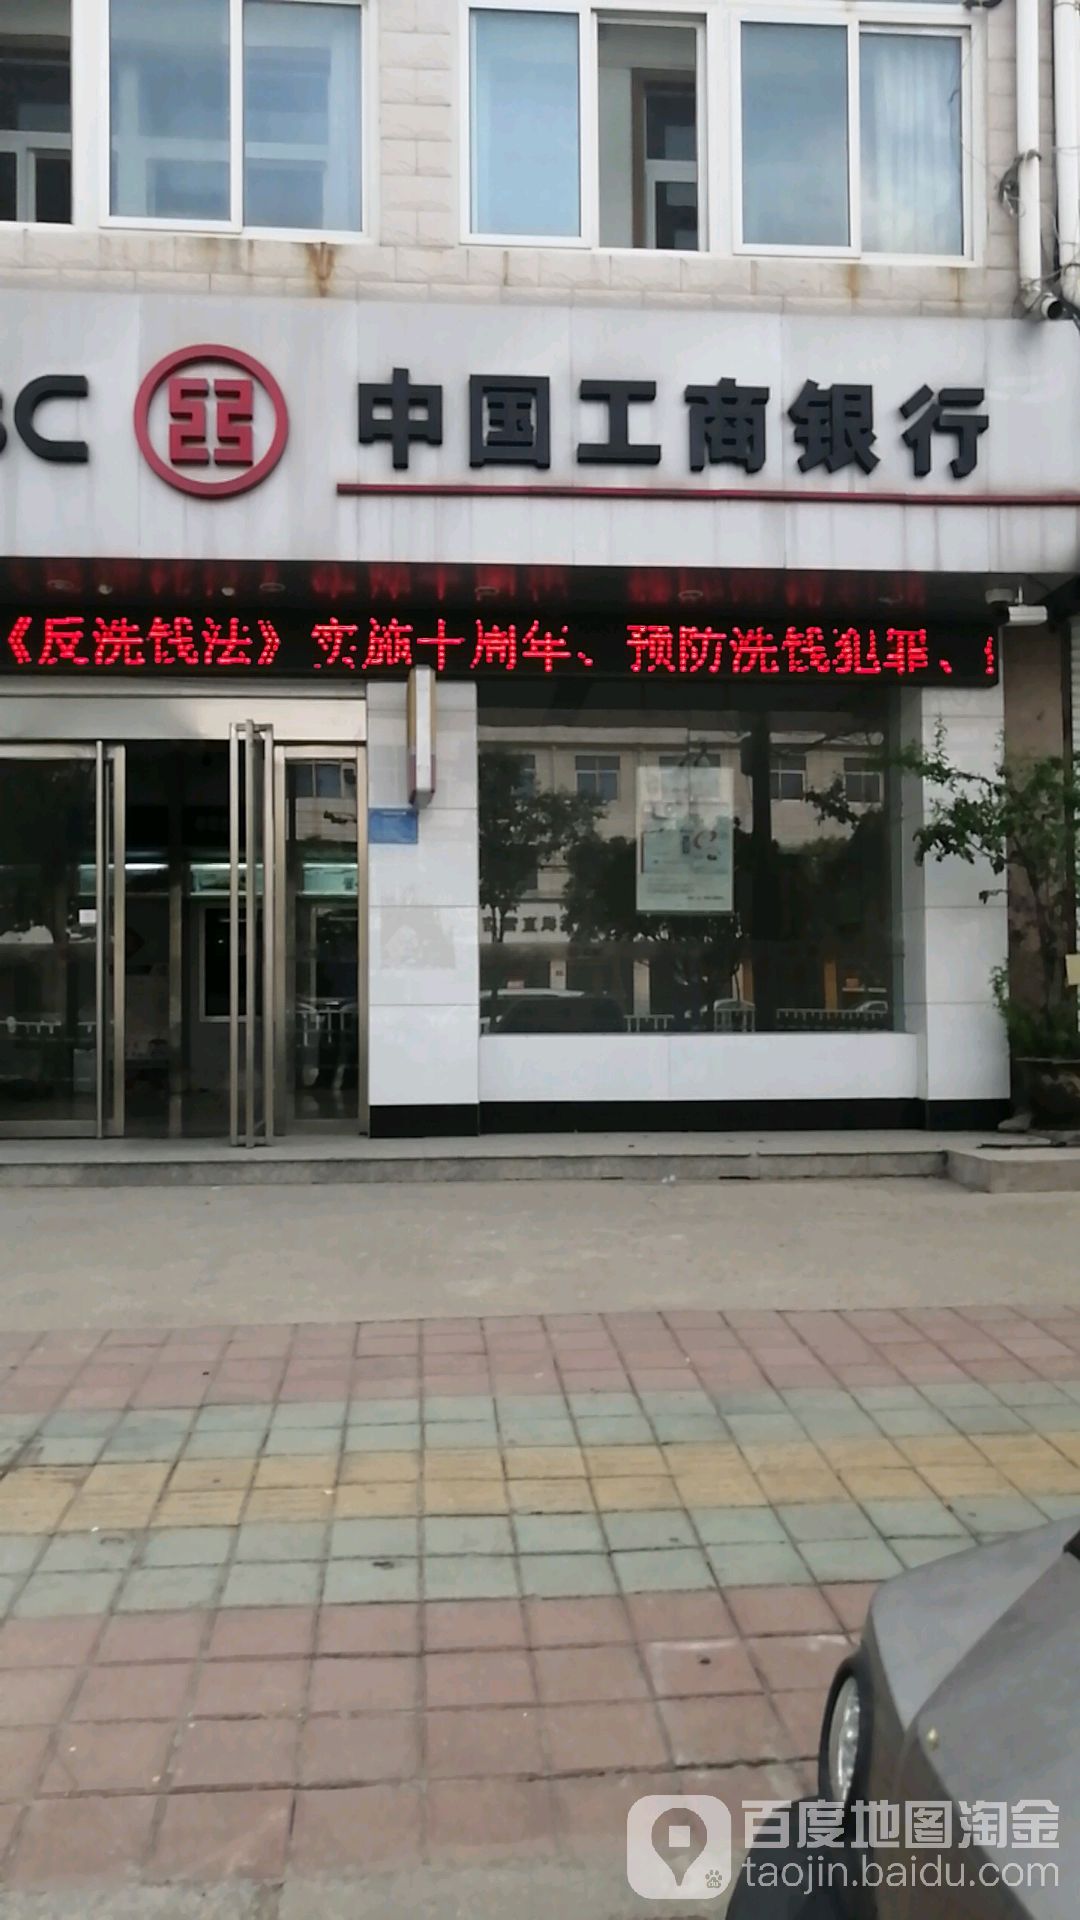 中國工商銀行24小時自助銀行(中山南路店)